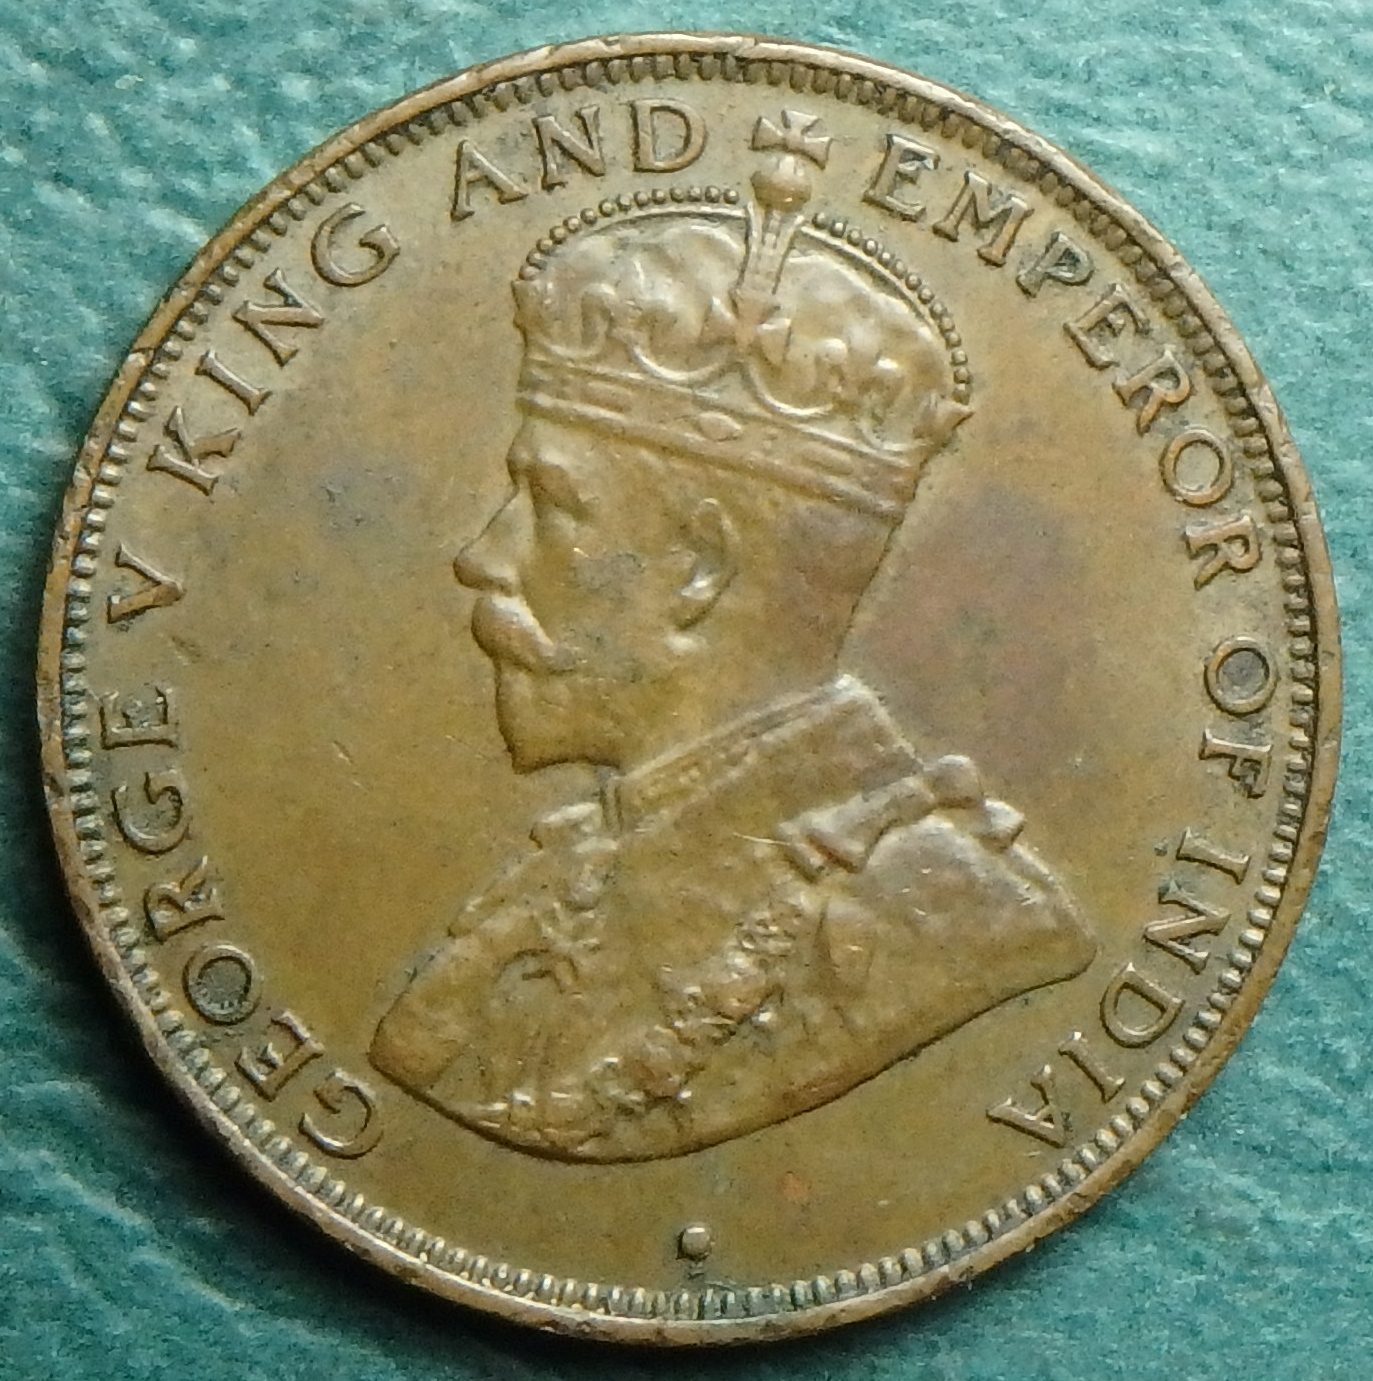 1934 HK 1 c obv.JPG